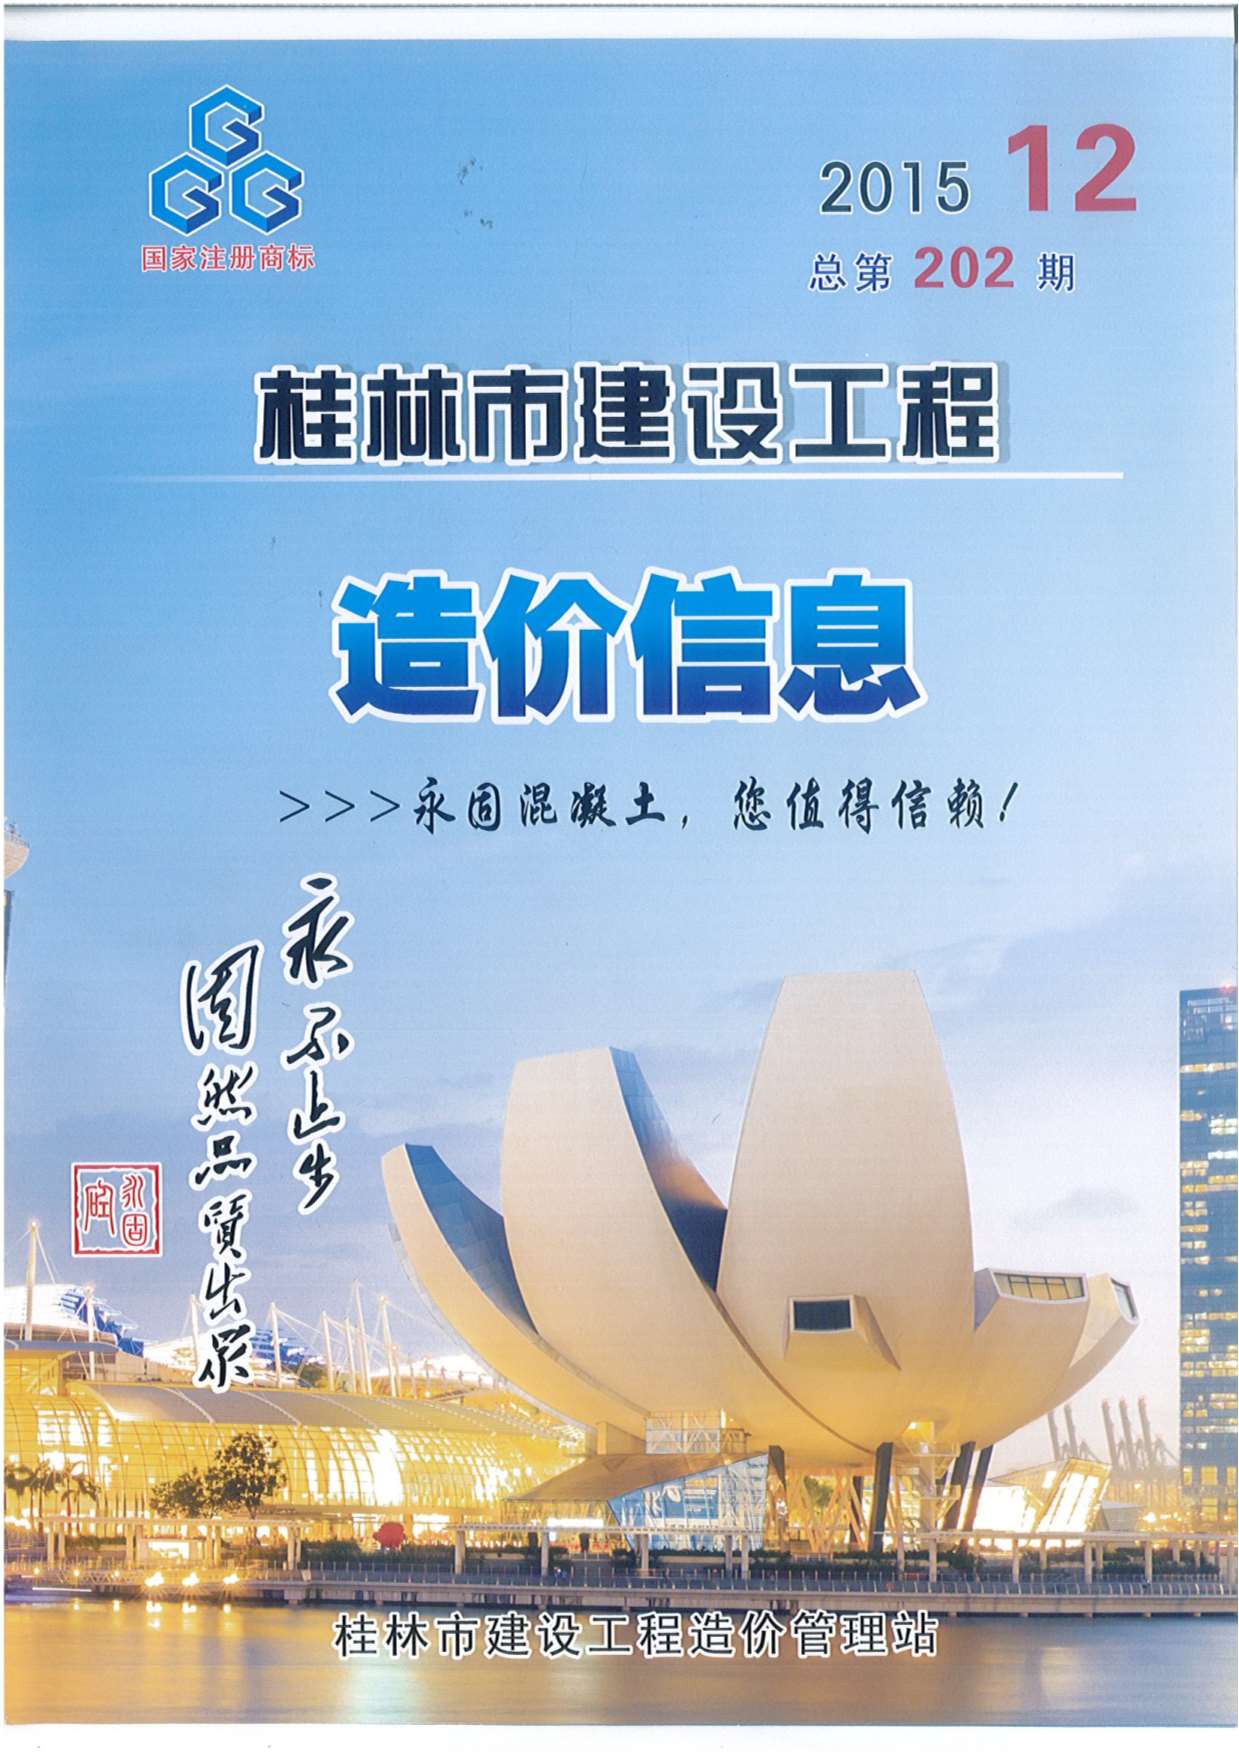 桂林市2015年12月建设工程造价信息